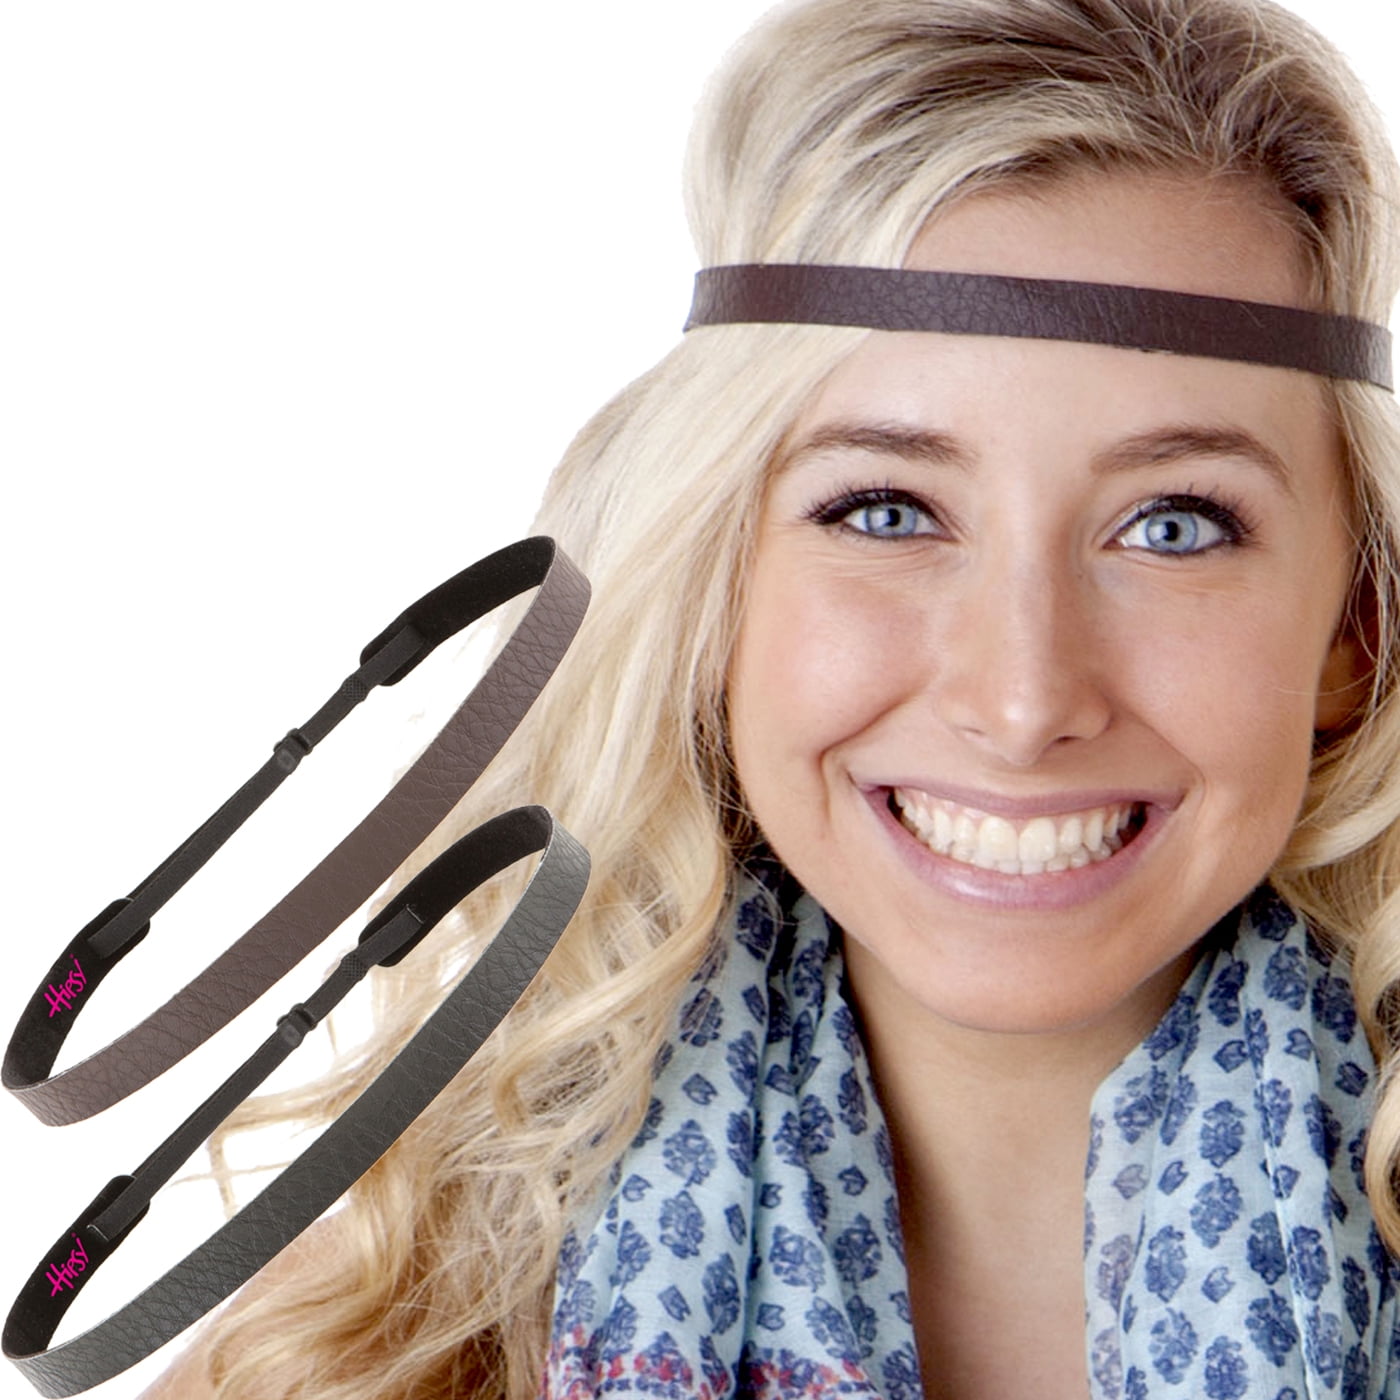 Hipsy Adjustable Non Slip Animal Print Hair Band Headbands for Women & Girls Pack